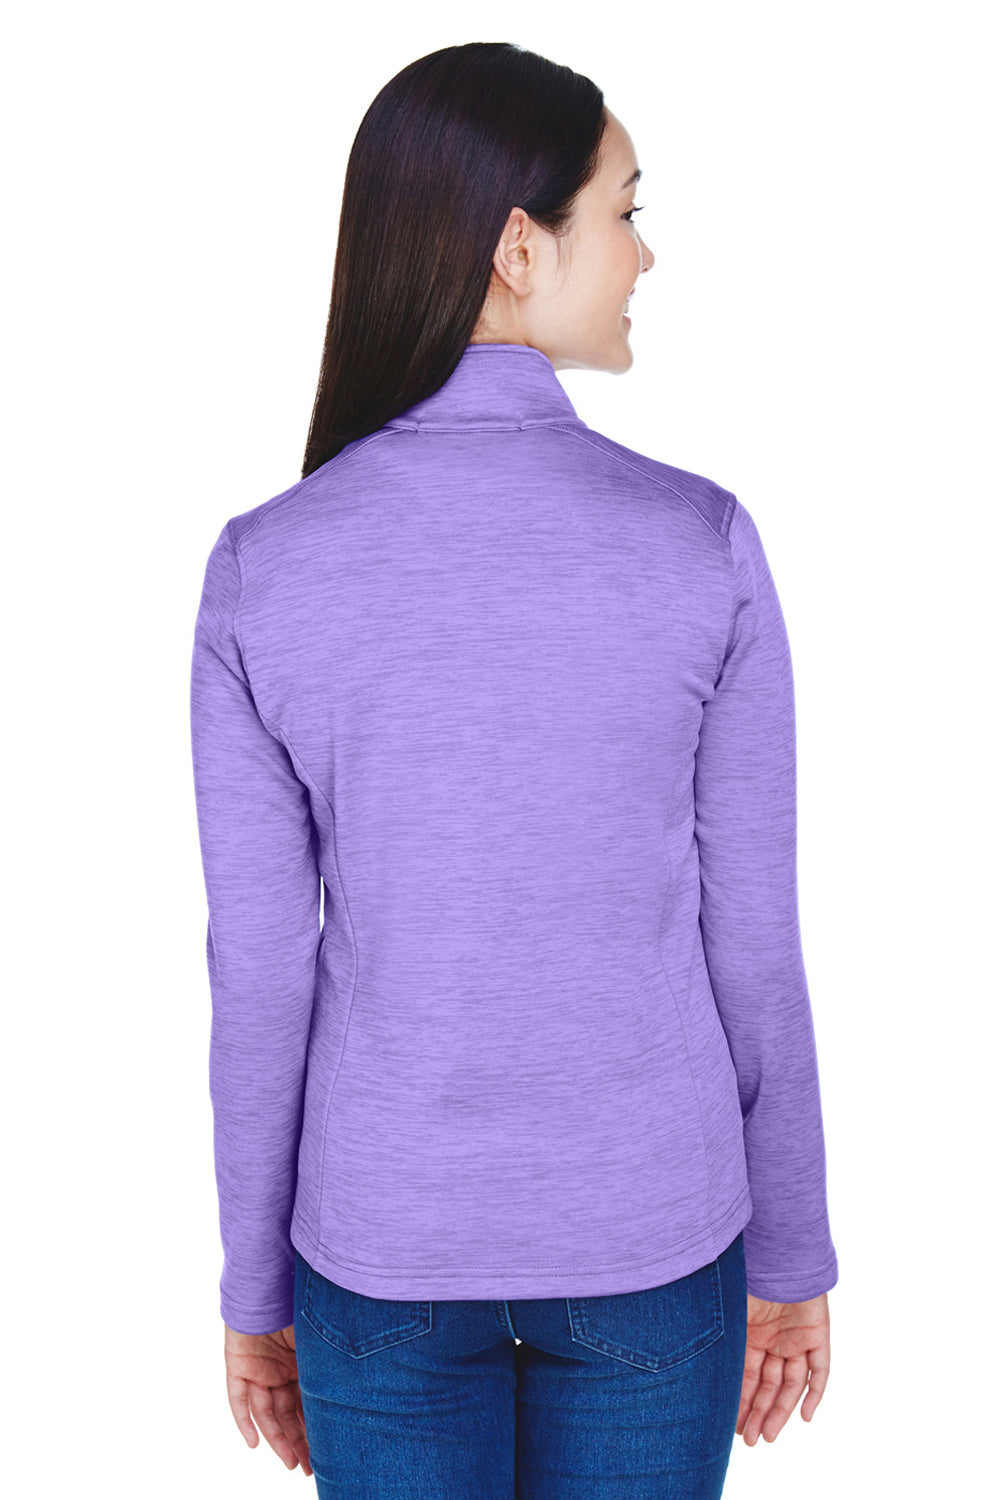 Devon & Jones DG798W Womens Newbury Fleece 1/4 Zip Sweatshirt Purple Back